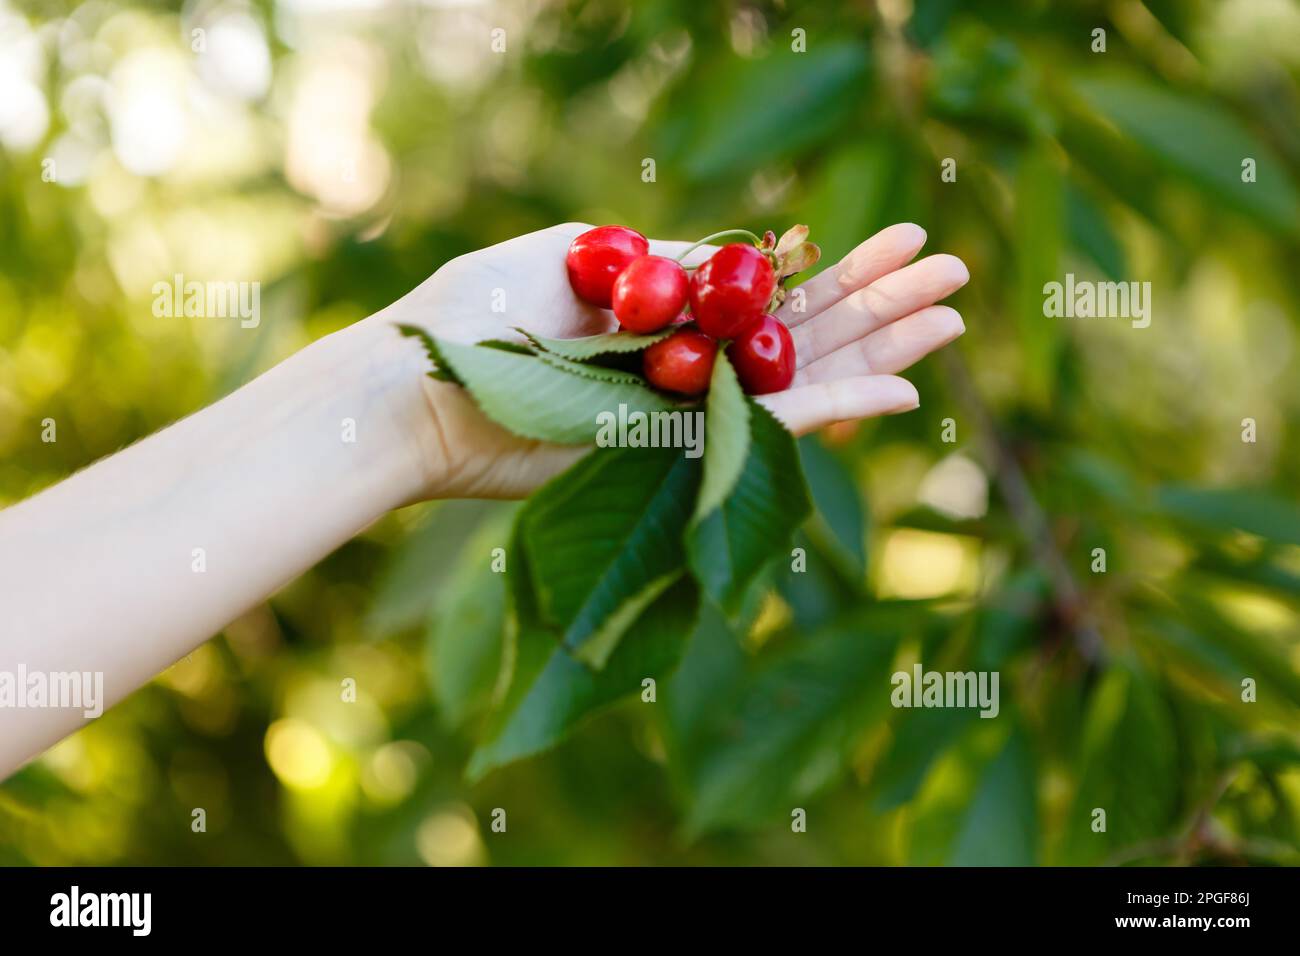 donna raccoglie ciliegie mature e rosse da un albero Foto Stock